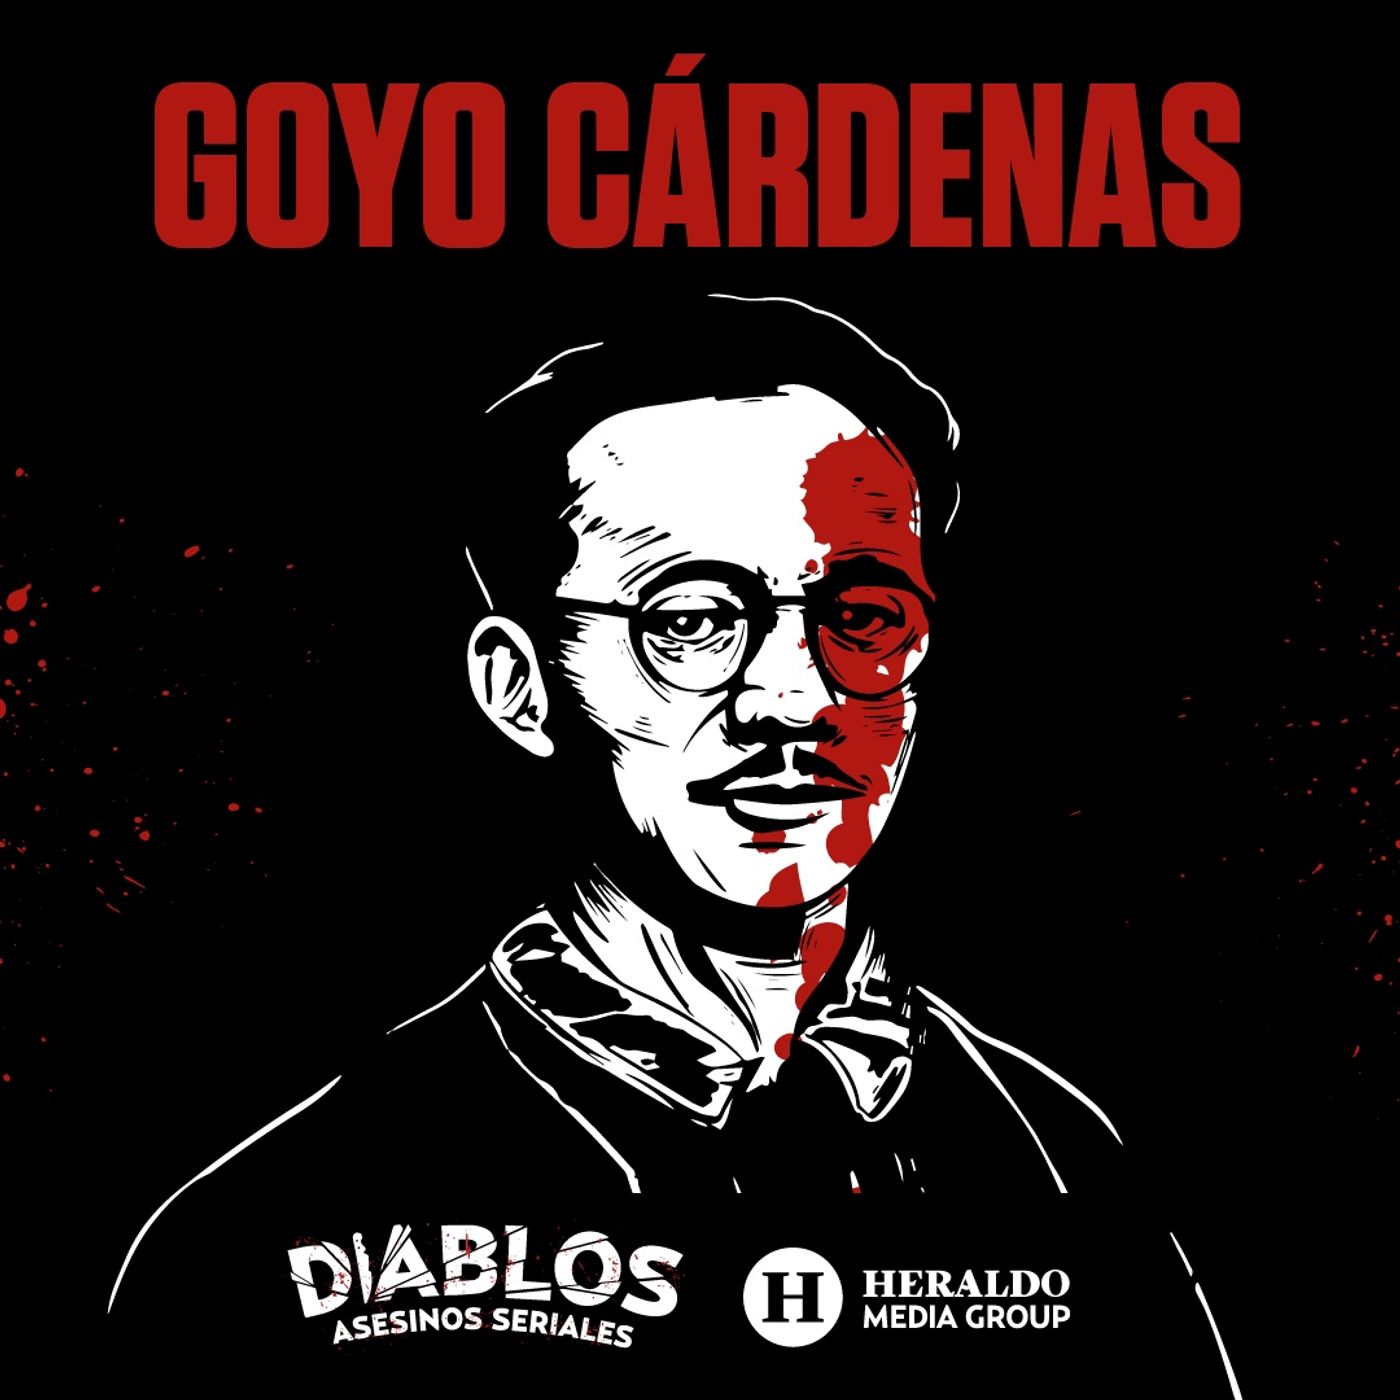 Goyo Cárdenas: El estrangulador de Tacuba | Diablos